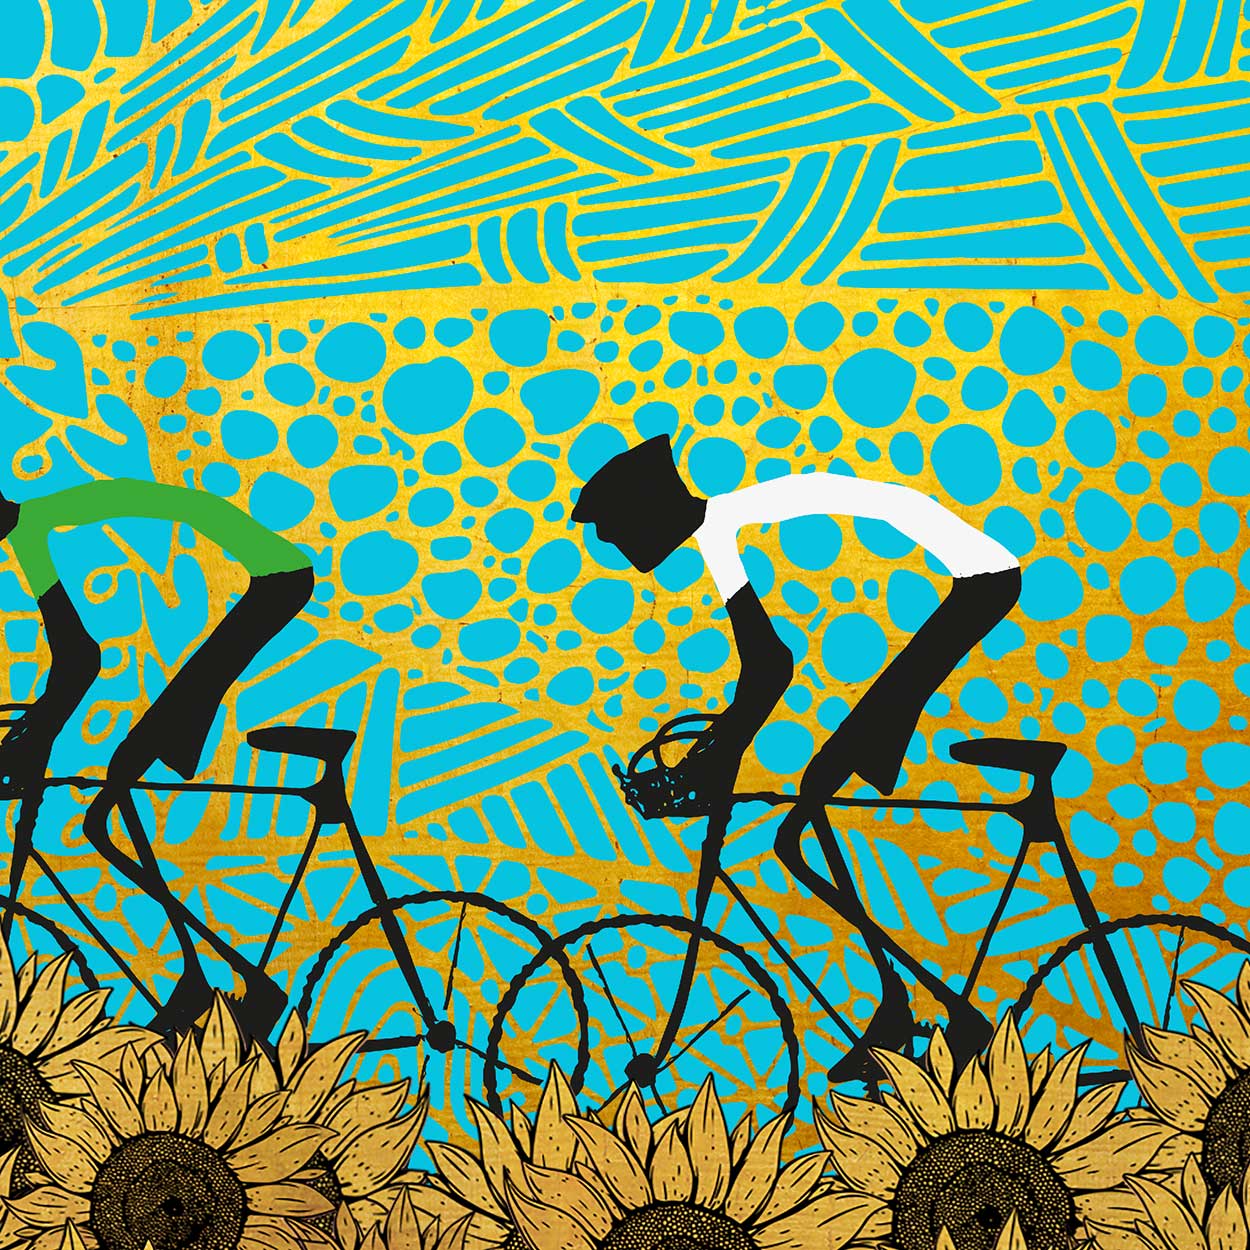 Le Tour de France Sunflowers scene. Cycling poster print